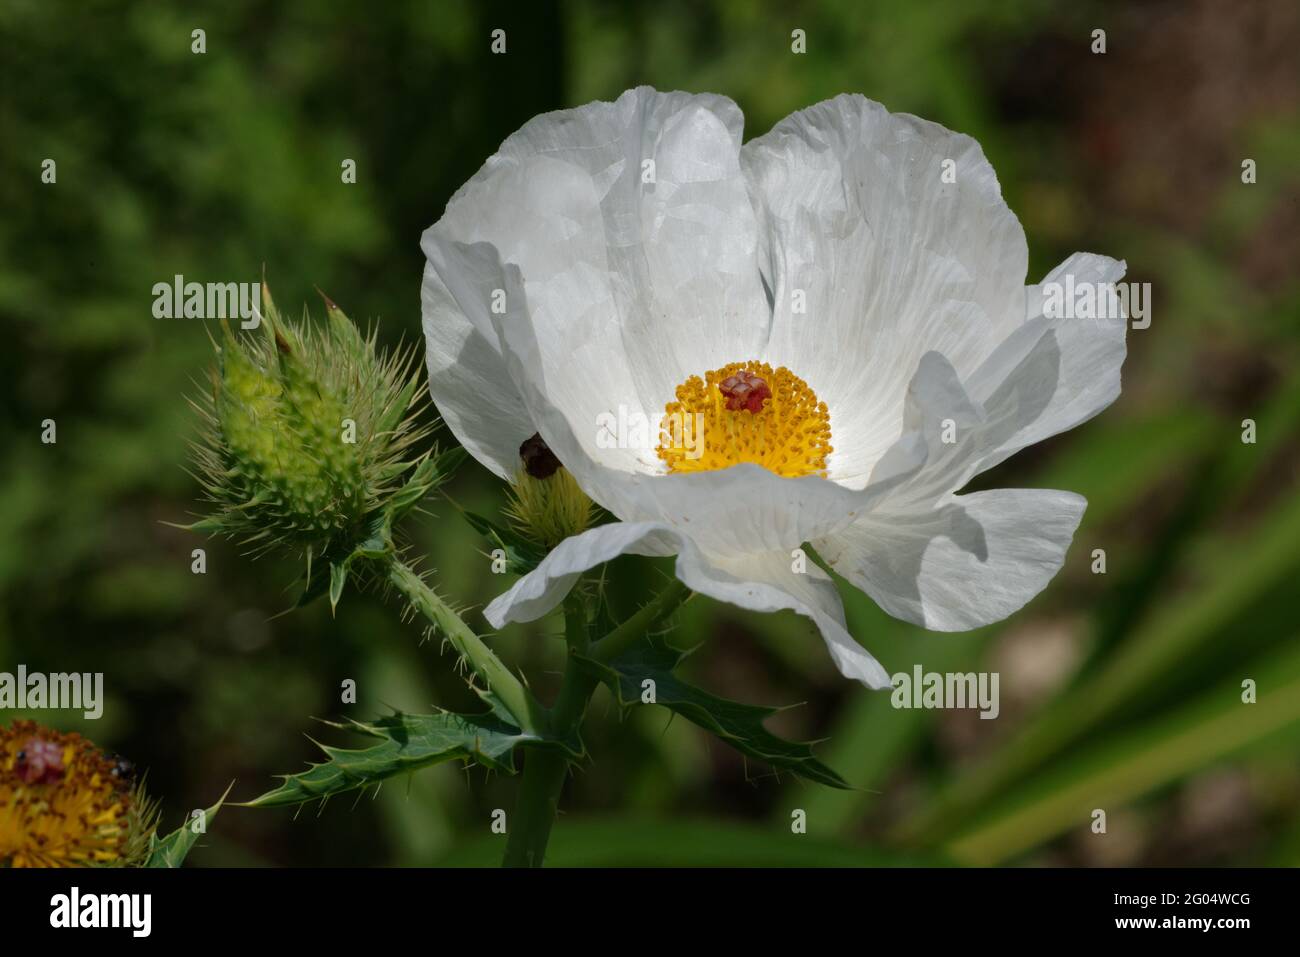 Prickly Poppy flower Stock Photo